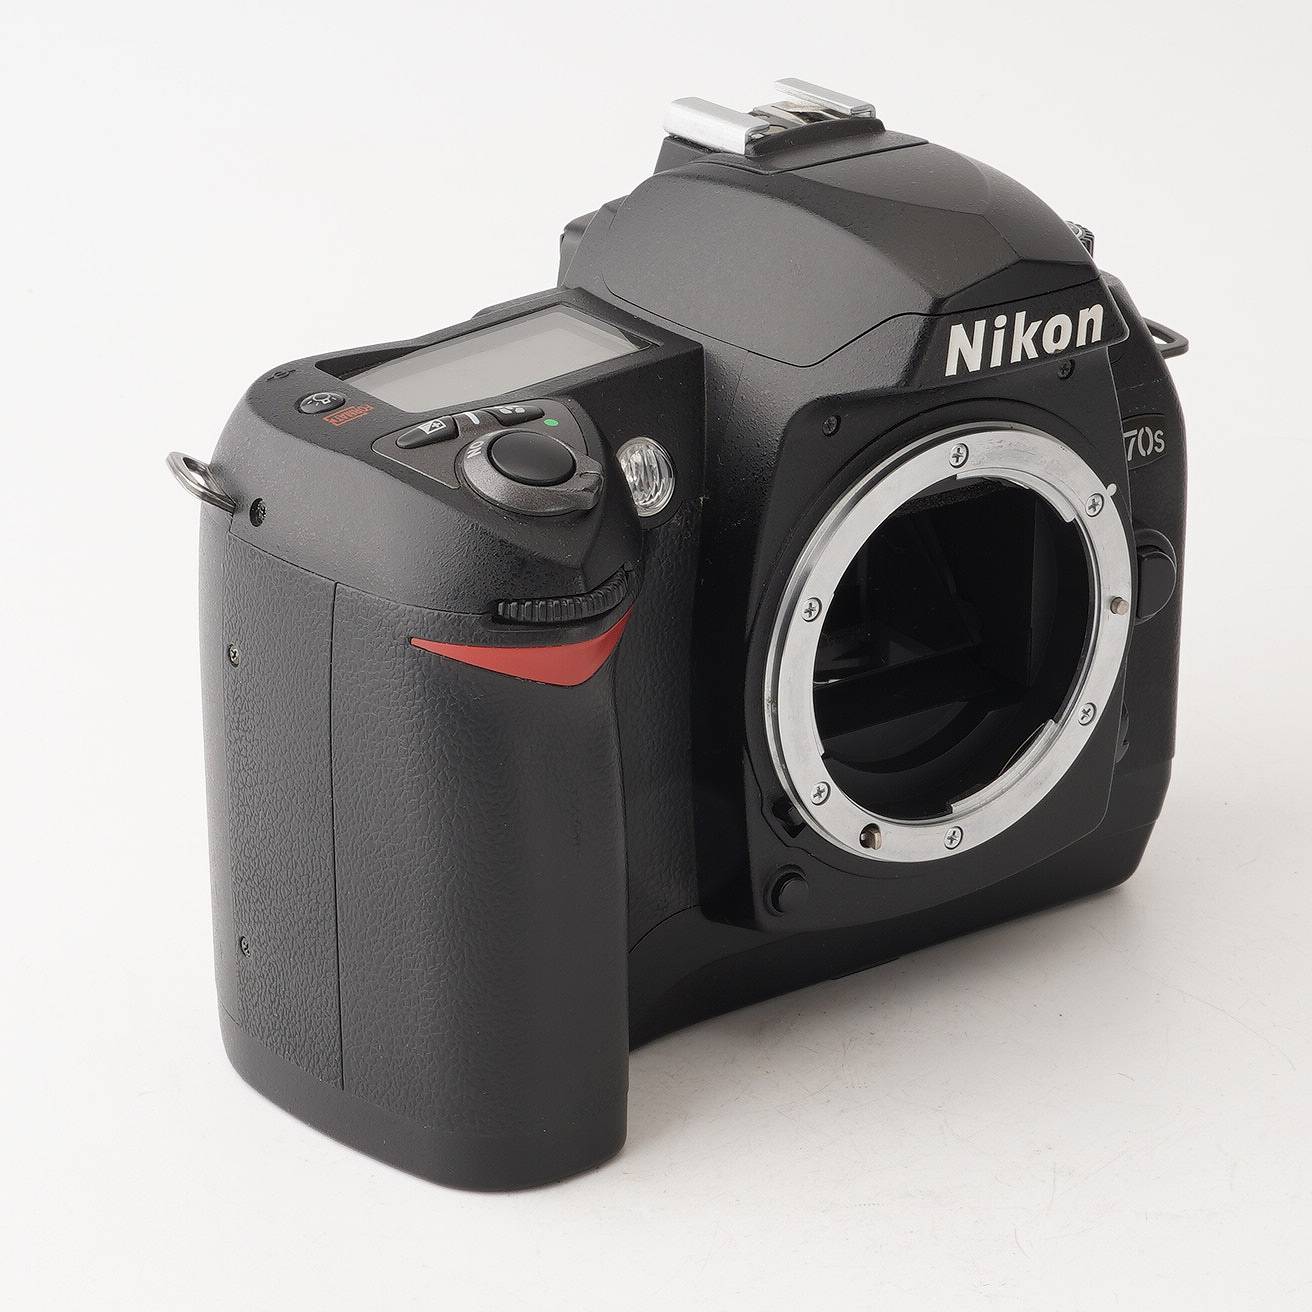 Nikon デジタル一眼レフカメラ D70S :B0009FJHSC-A2H9J4SSUDHTE